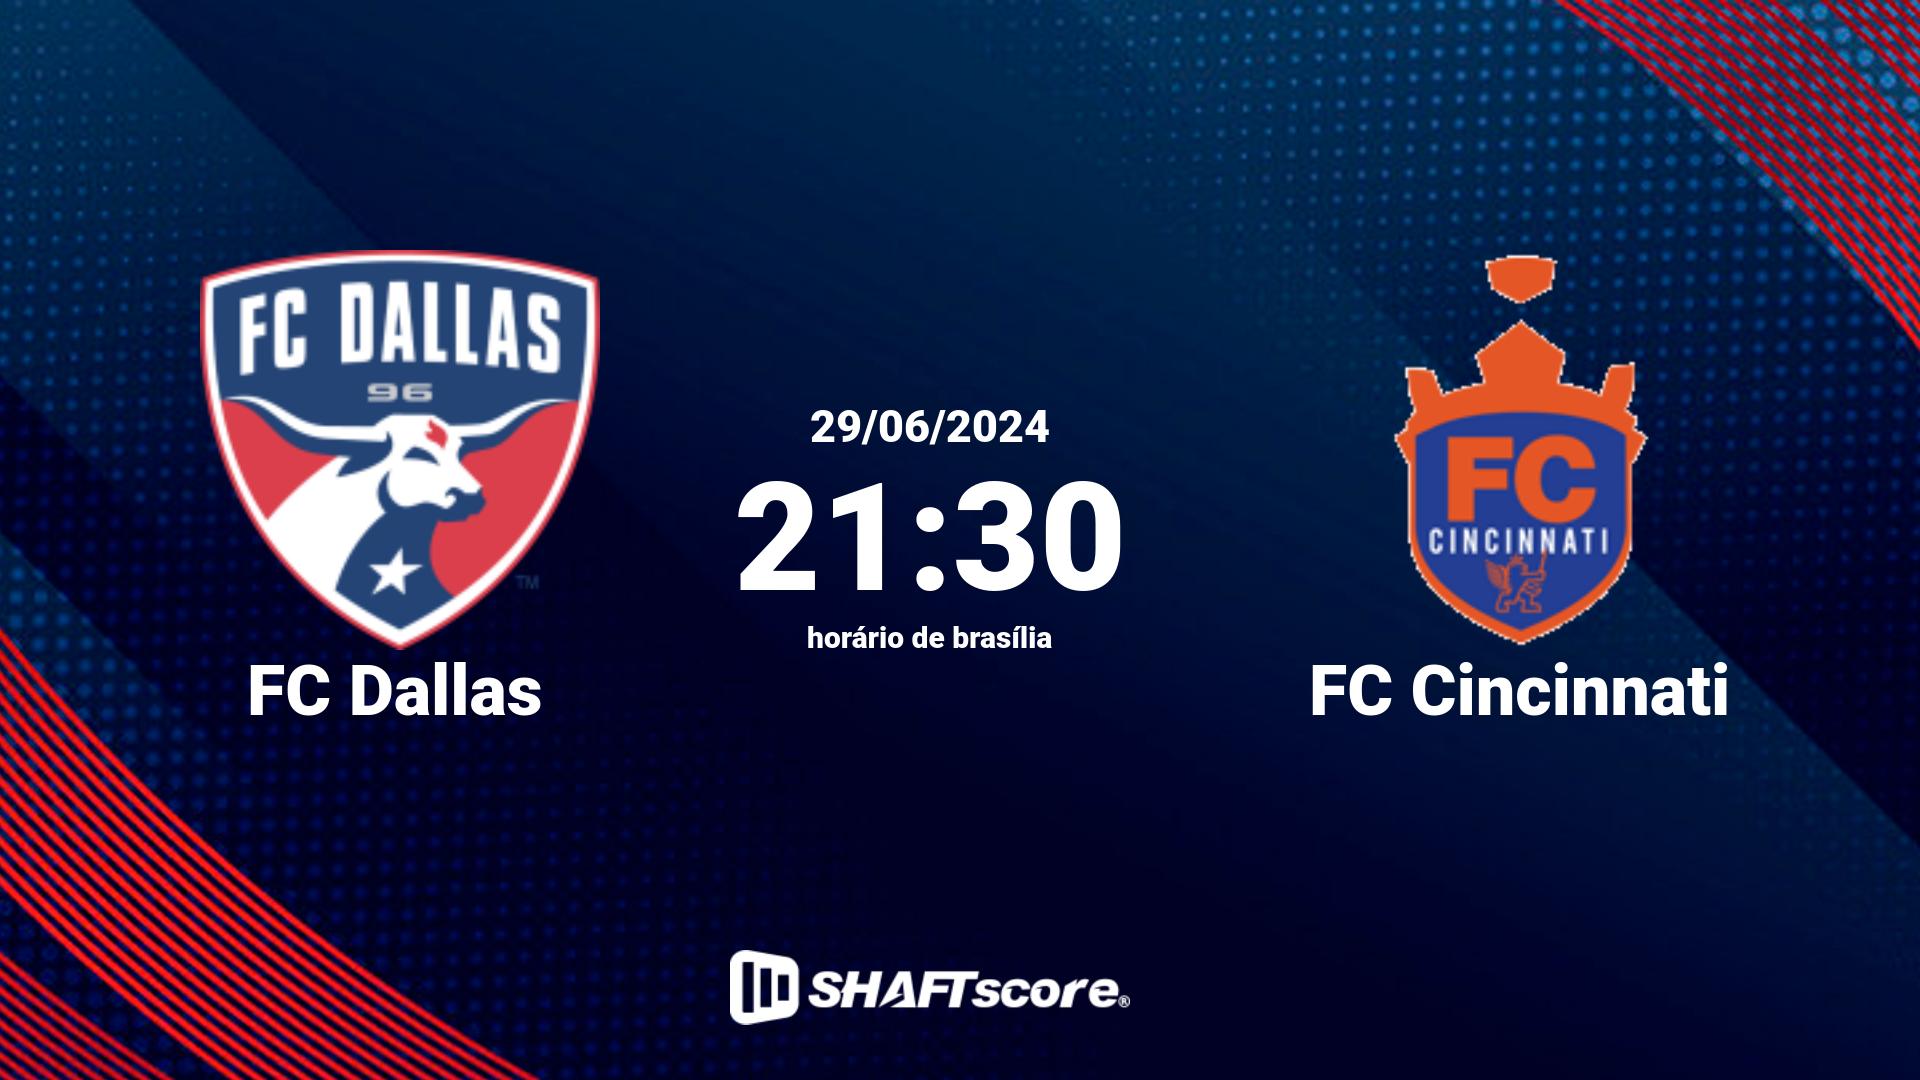 Estatísticas do jogo FC Dallas vs FC Cincinnati 29.06 21:30